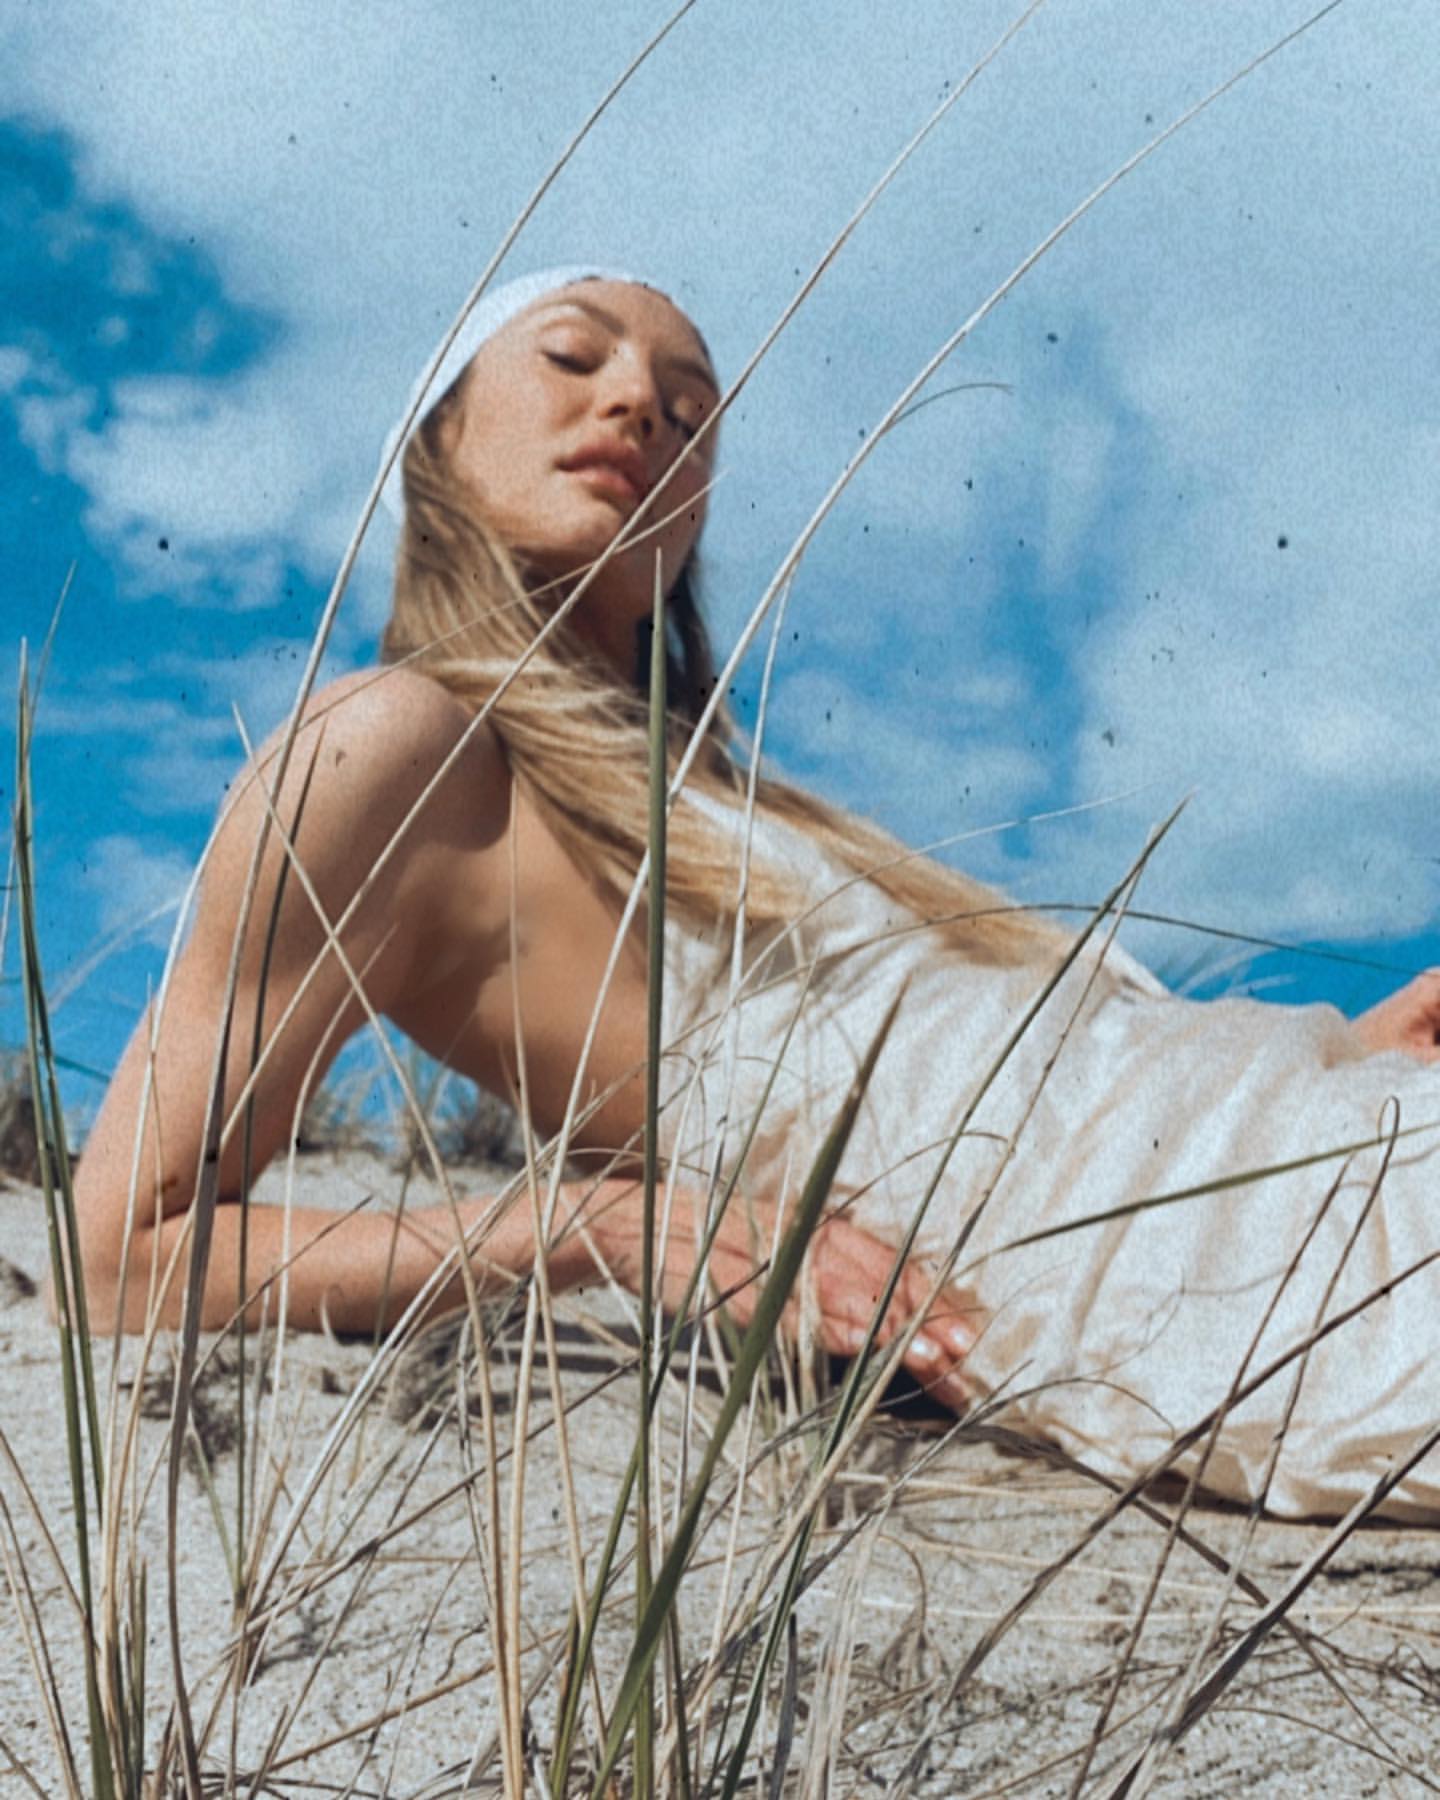 Fotos n°1 : Candice Swanepoel en la playa!